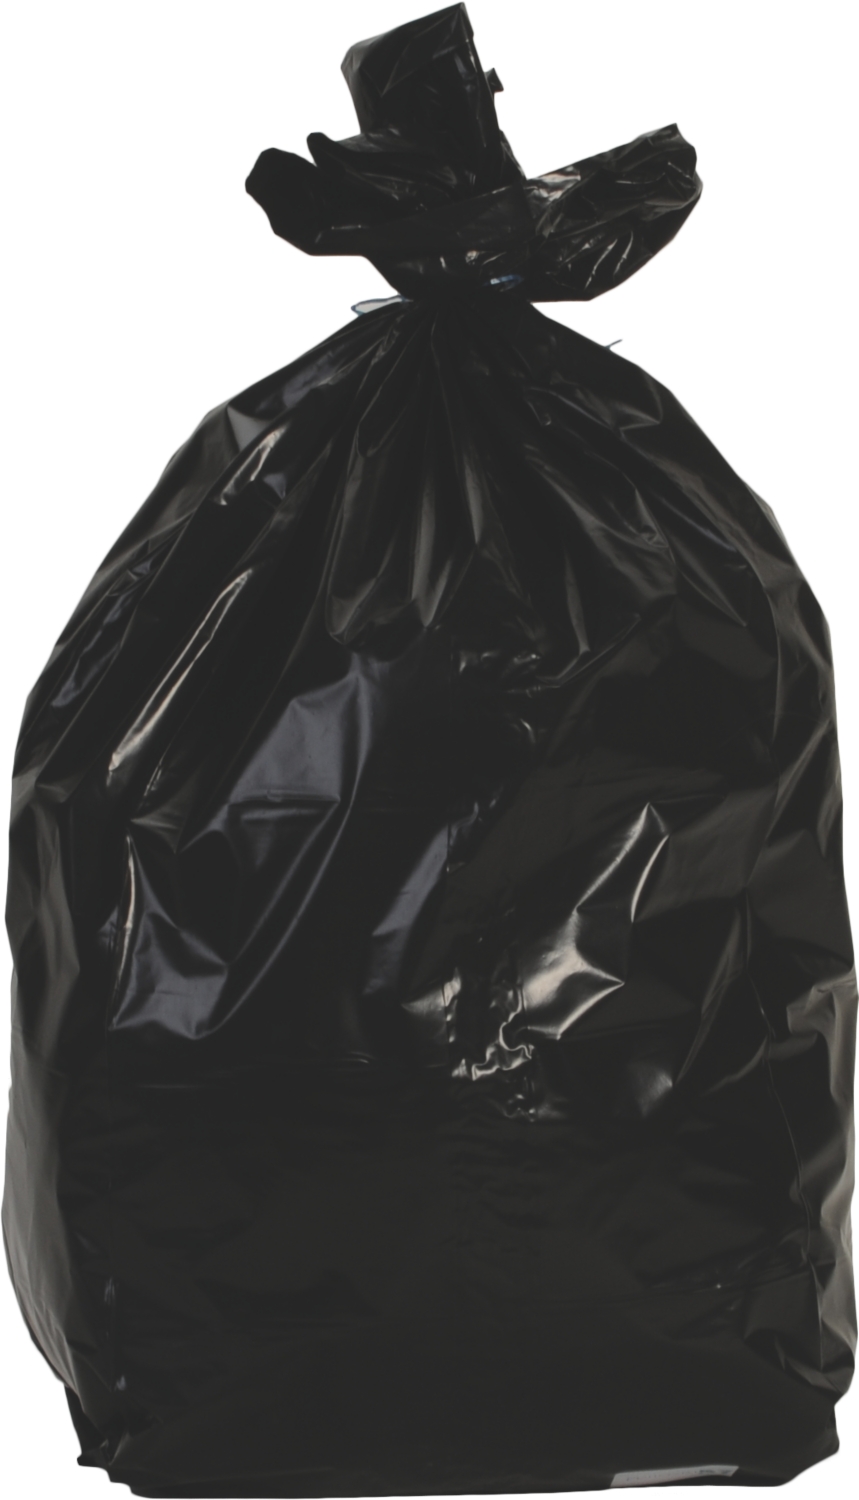 Sac poubelle BD - Avec liens - 1 rouleau de 100 sacs - Noir Médiprotec